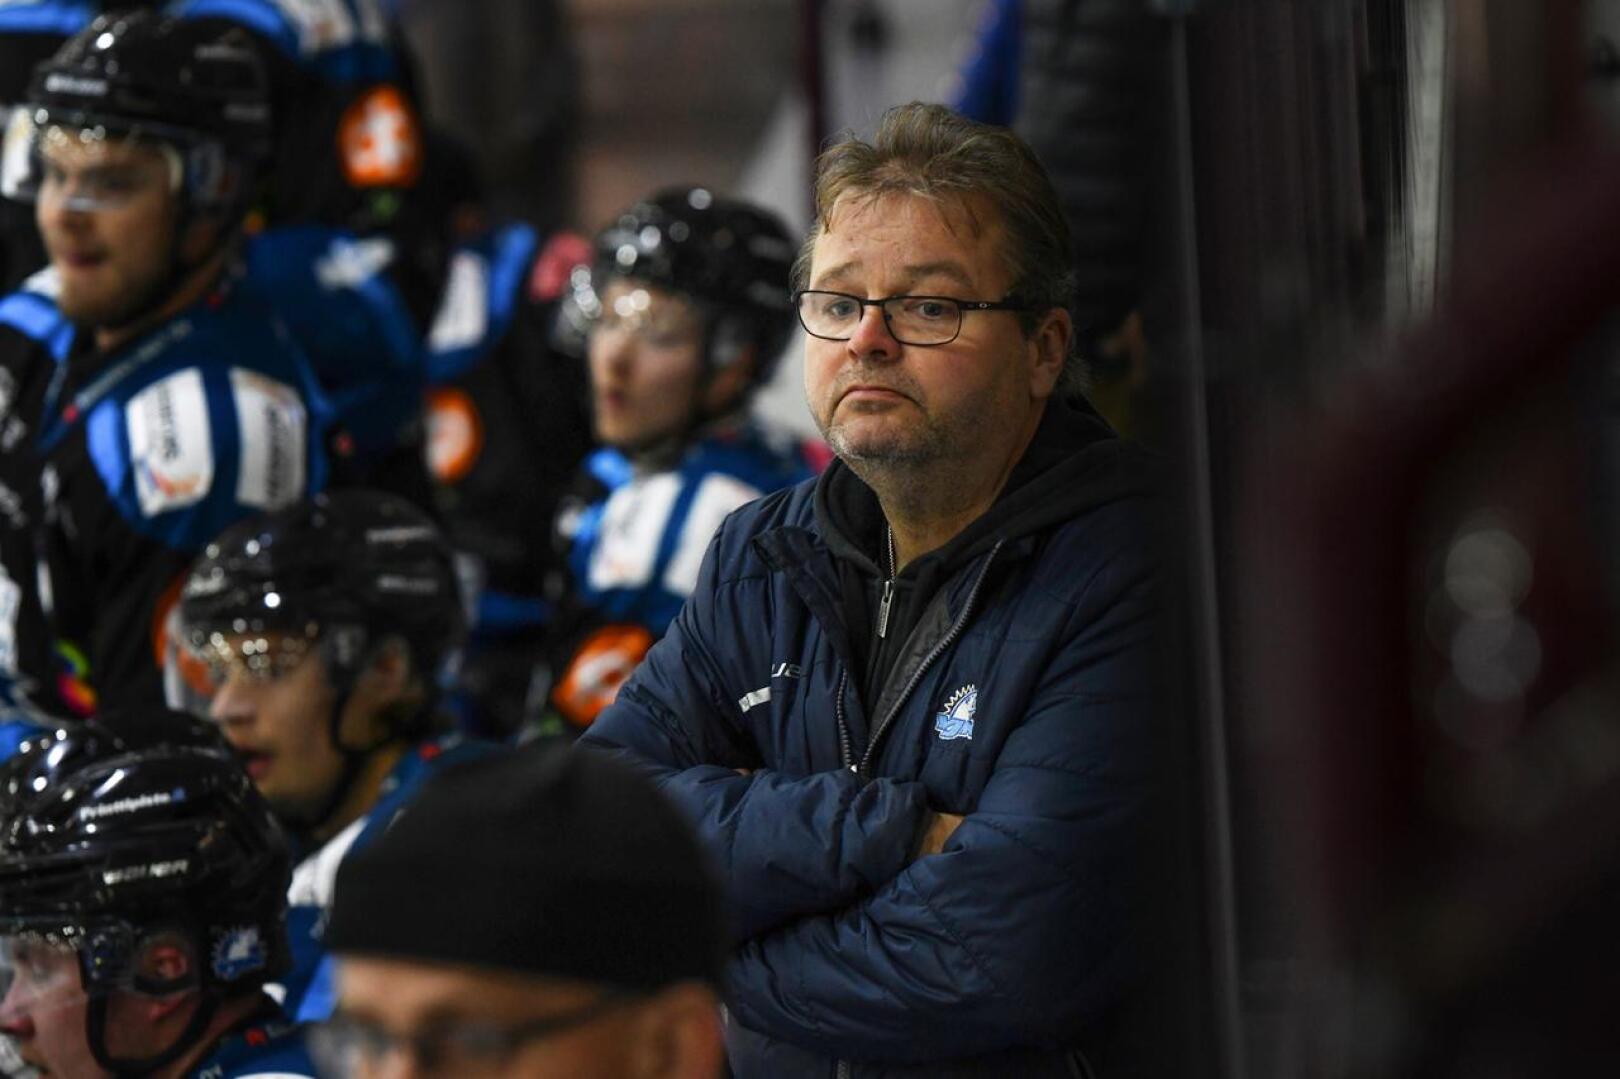 YJK:n valmentajana jatkava Pekka Palo nostaa joukkueensa vahvuudeksi kokemuksen.